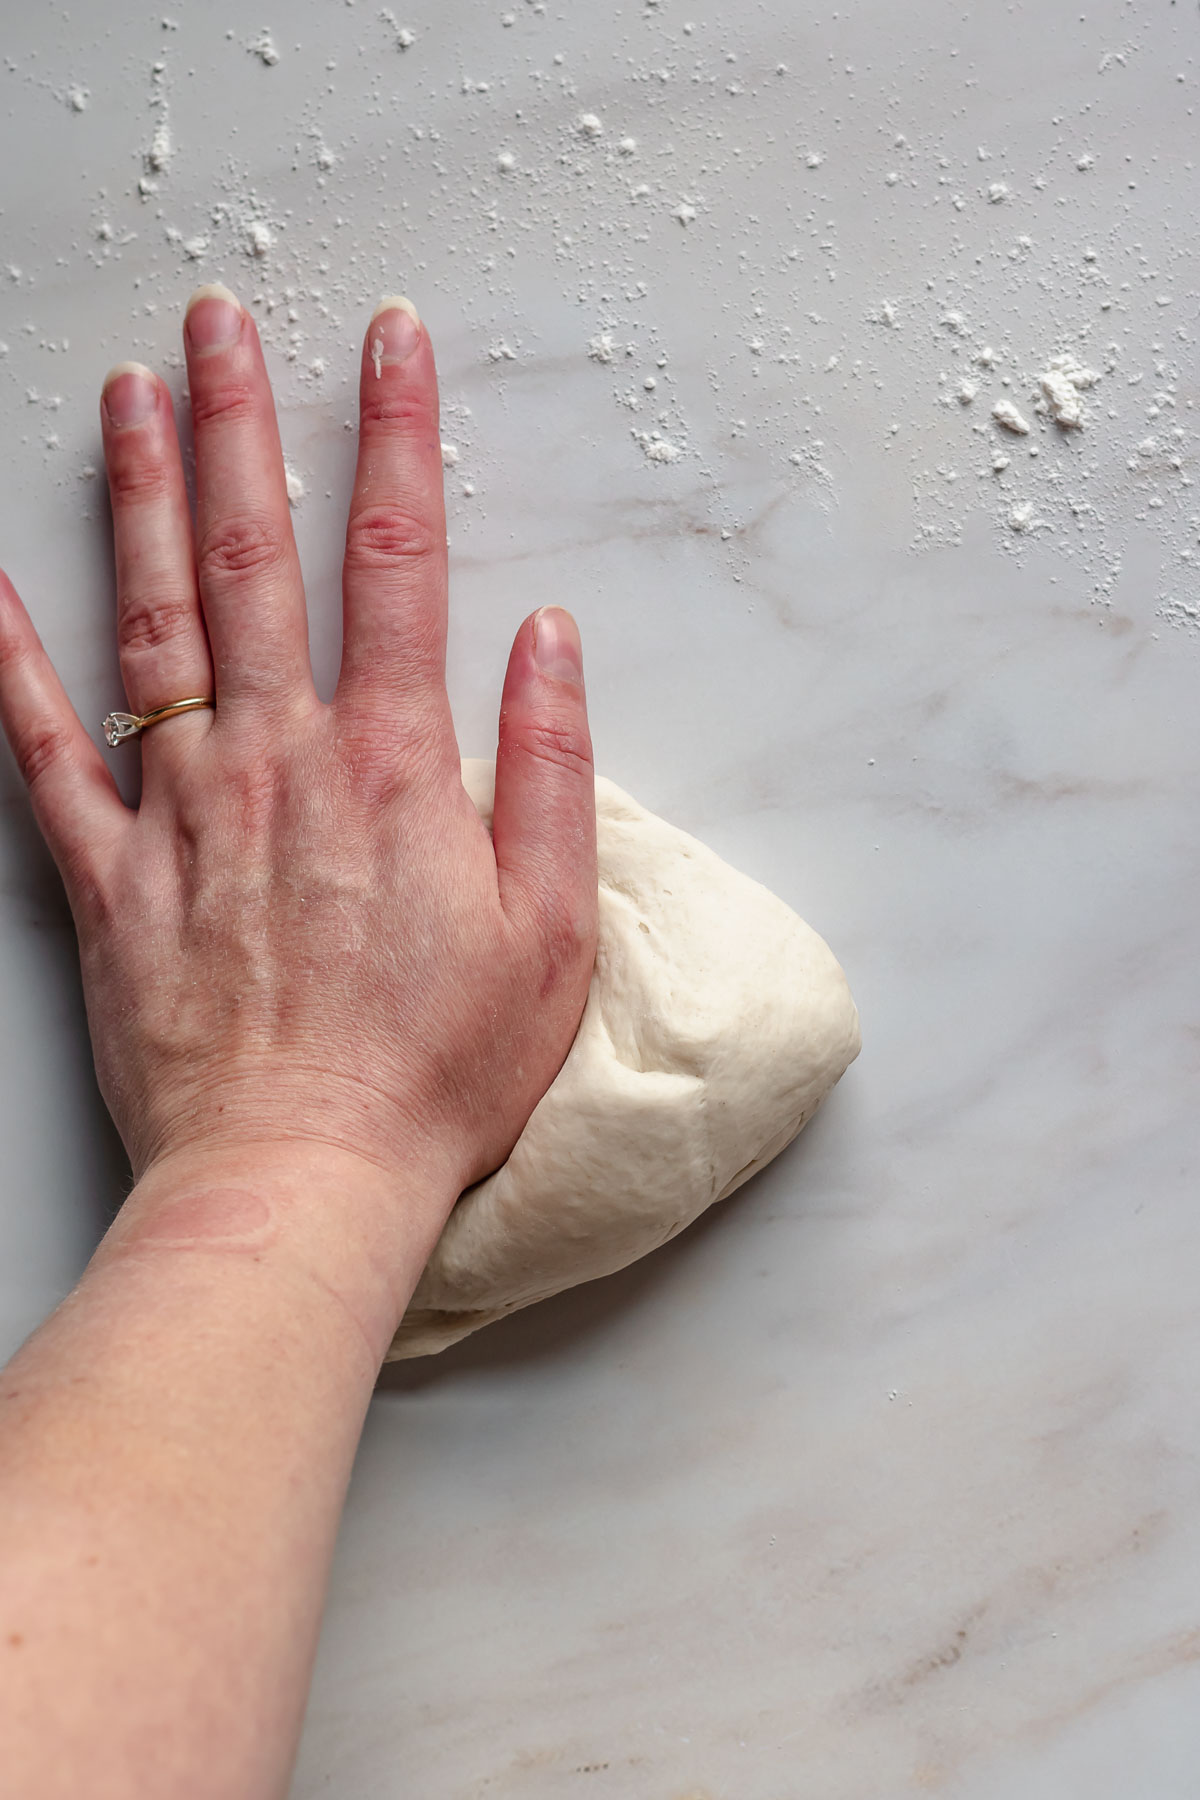 A hand kneading pretzel dough.